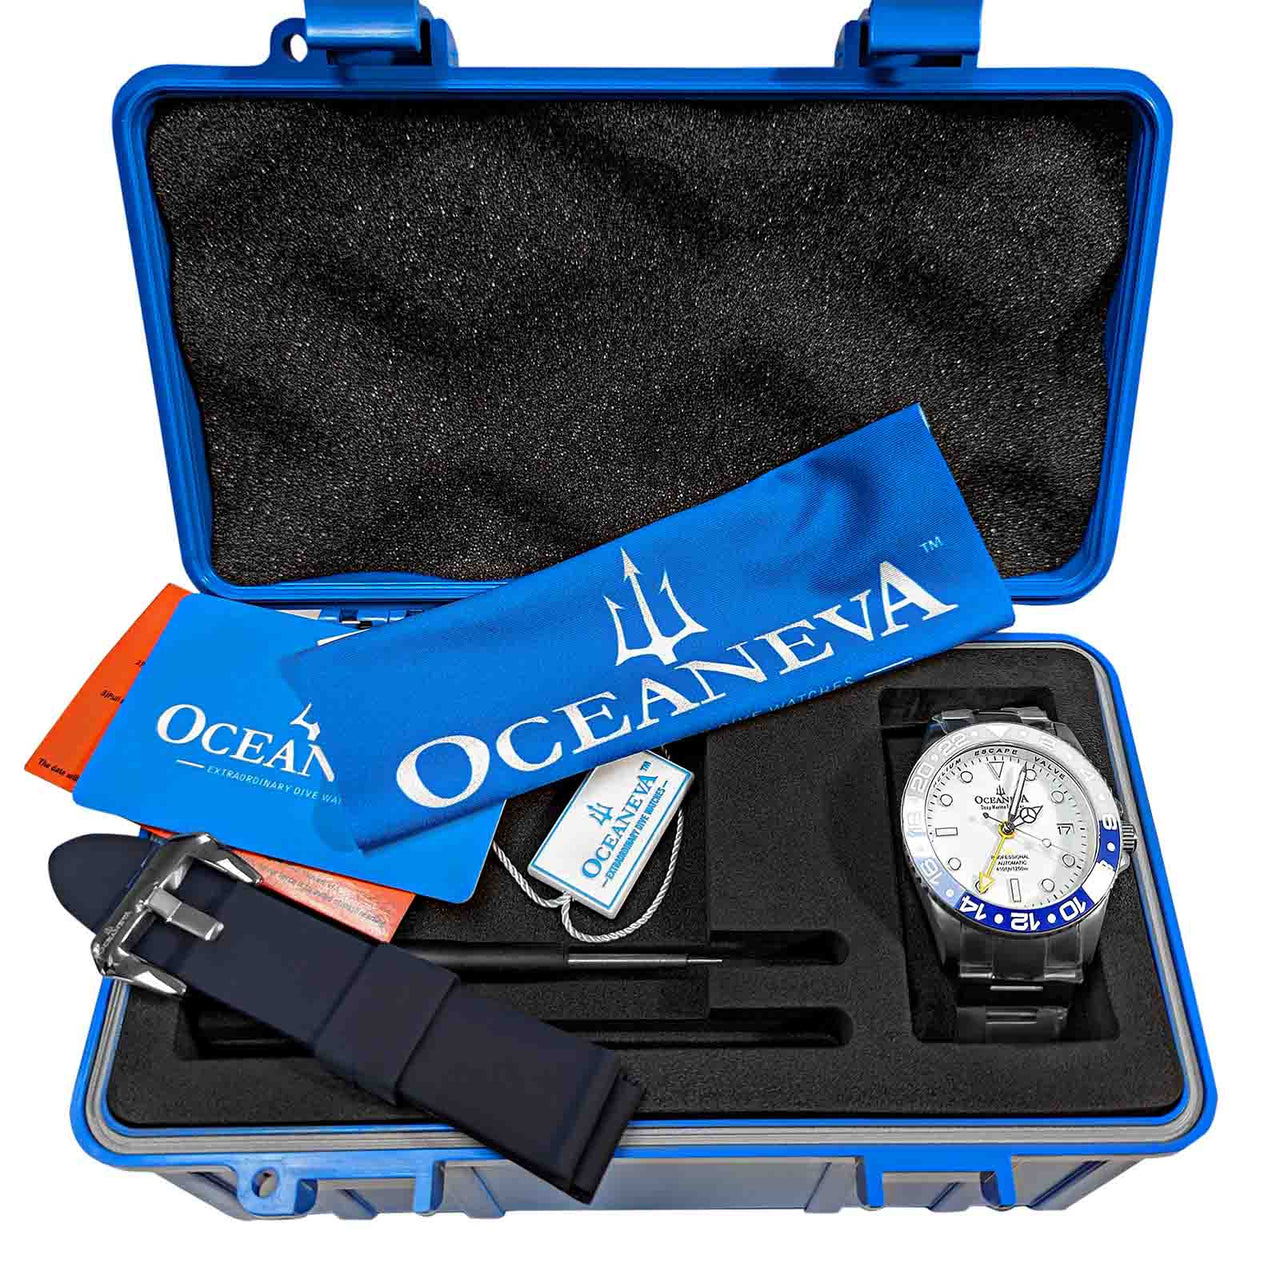 "Oceaneva Titanium GMT Watch showcasing MIL-SPEC certification